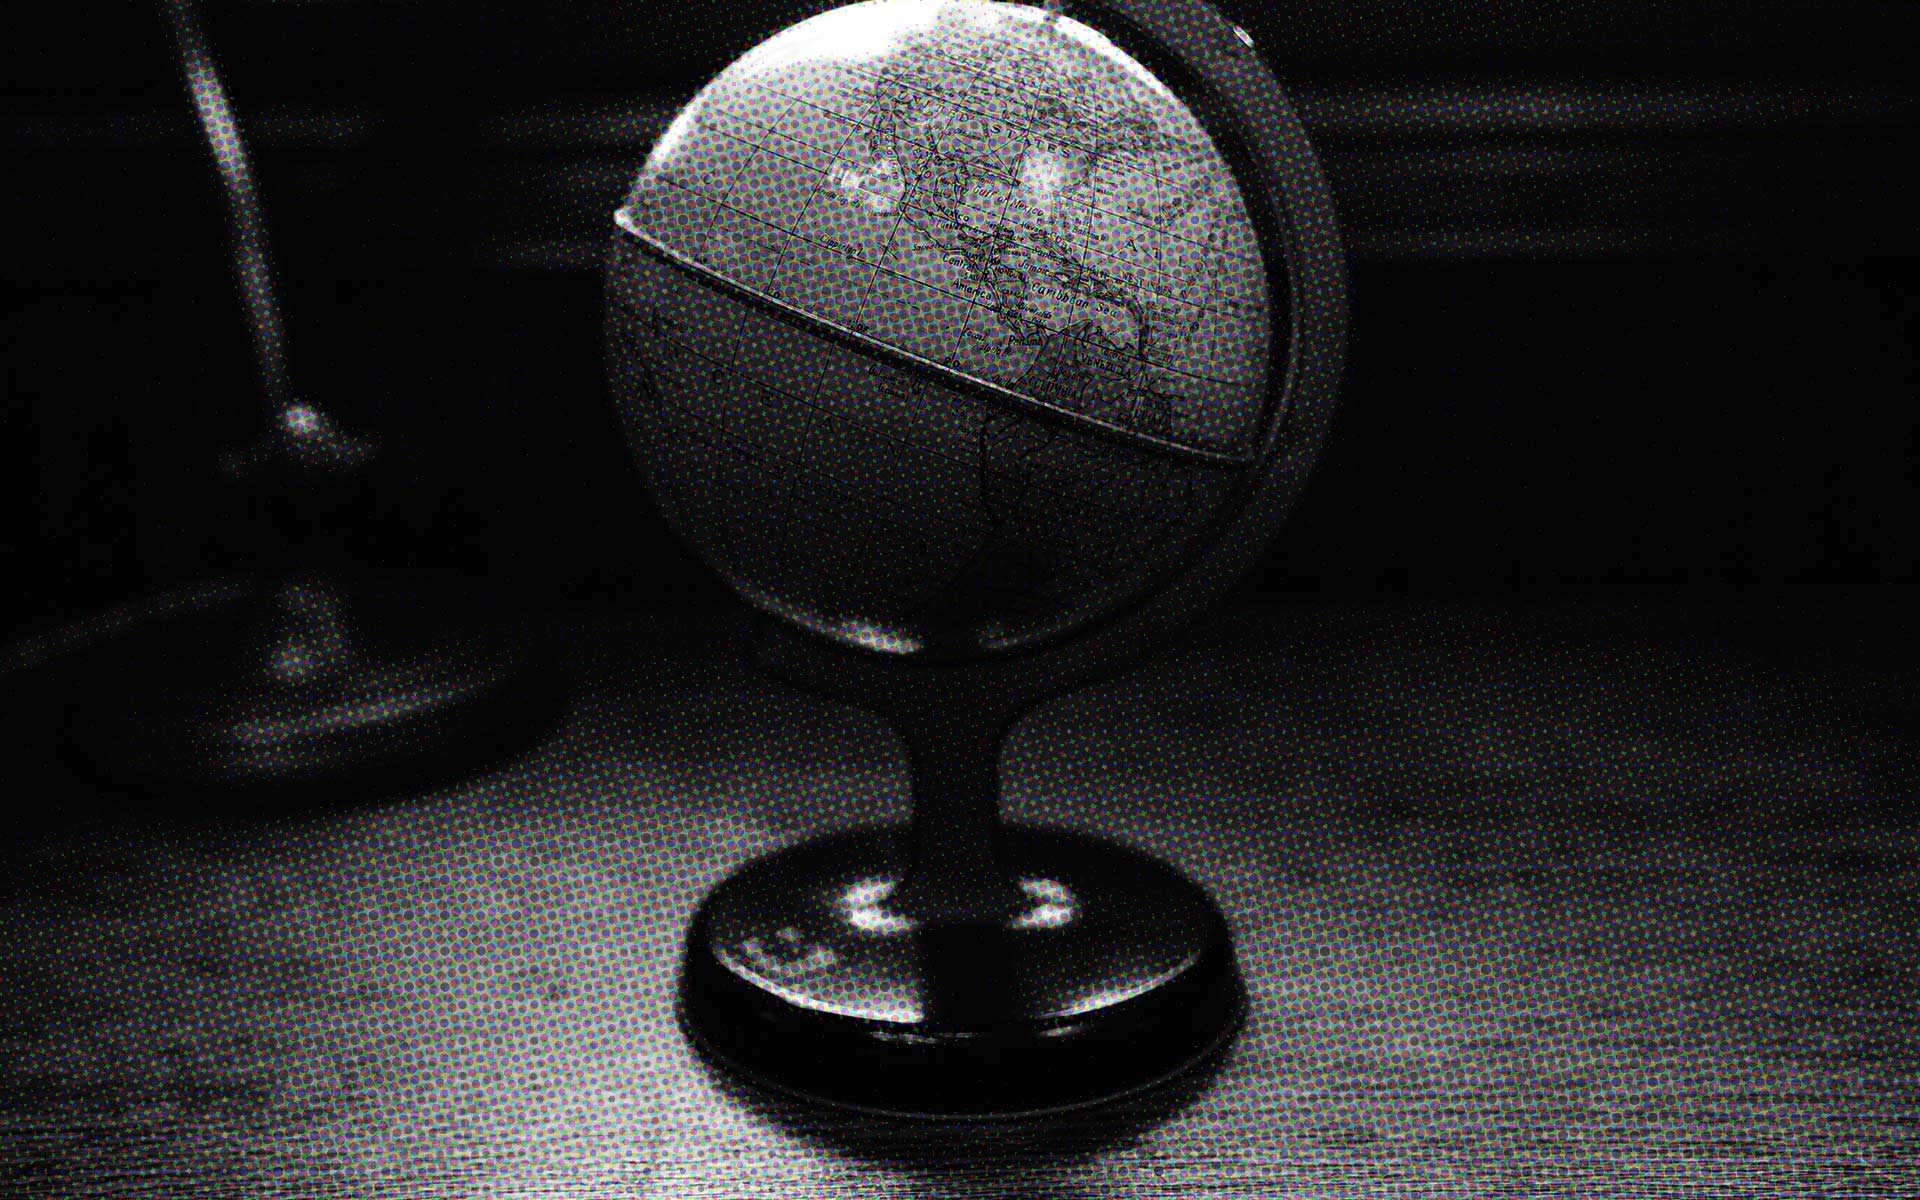 【シリーズ・都市伝説】謎の大陸が記された球体「聖徳太子の地球儀」